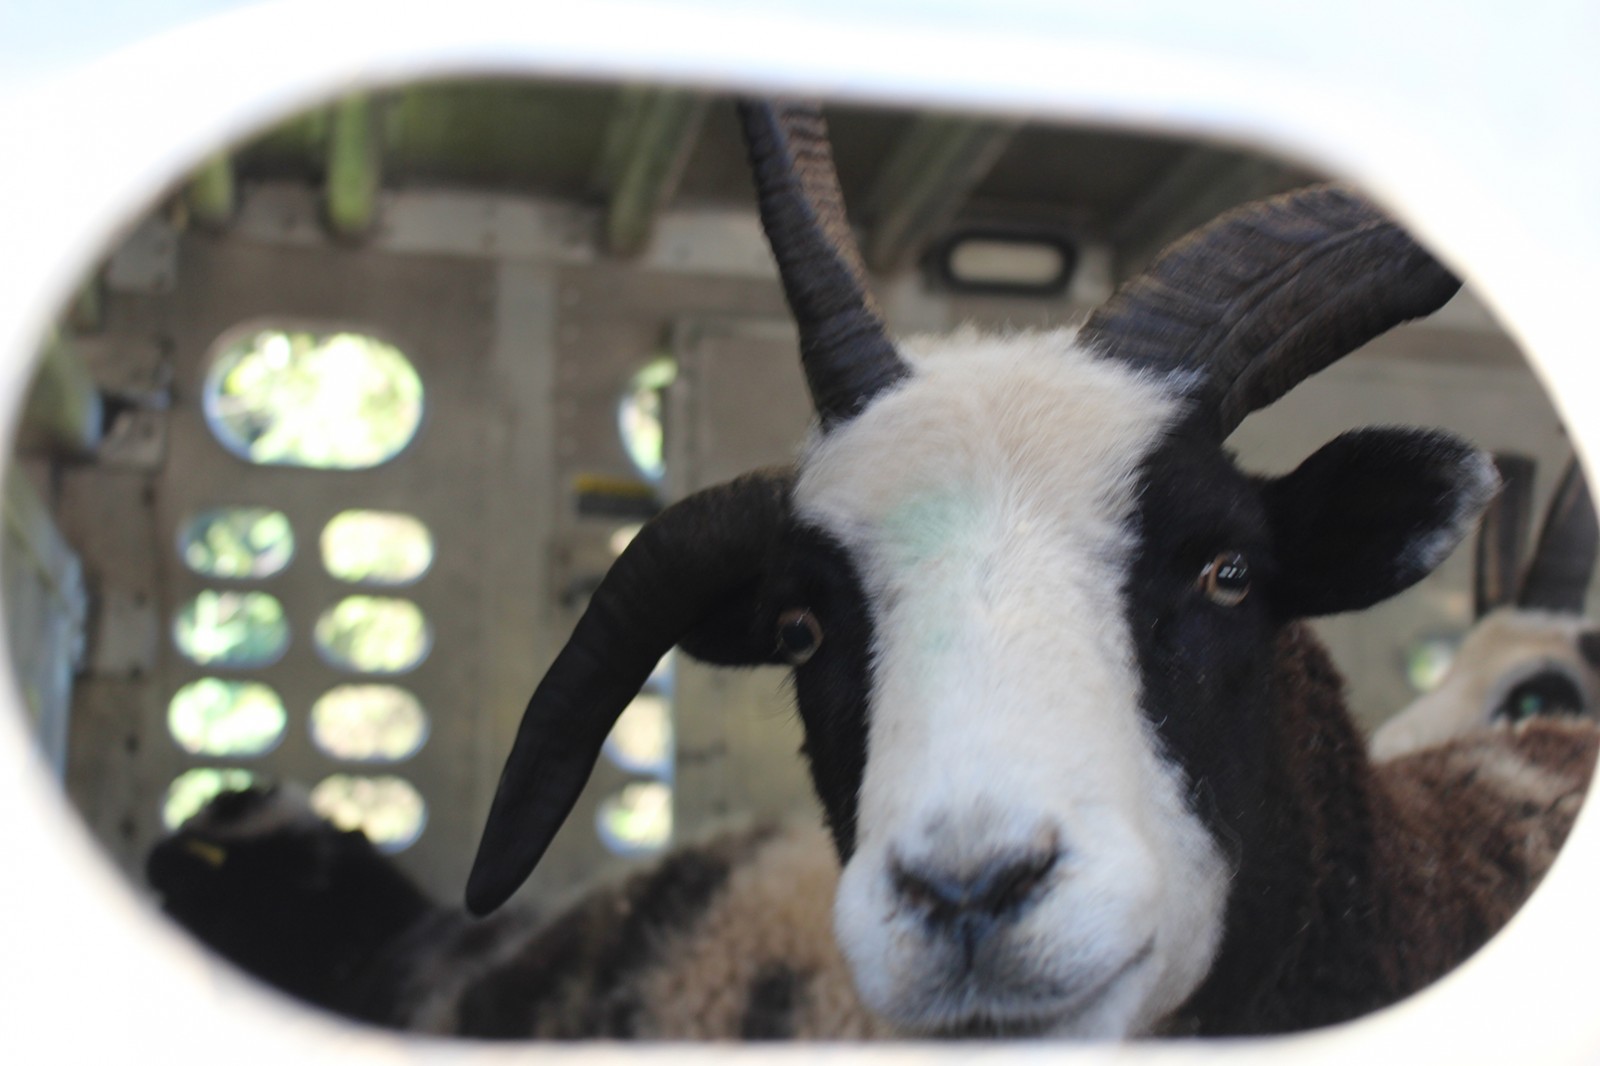 הכבשה ירדן מתבוננת בסקרנות מתוך הדיר הנייד על-גבי המשאית. (צילום: Friends of the Jacob sheep)